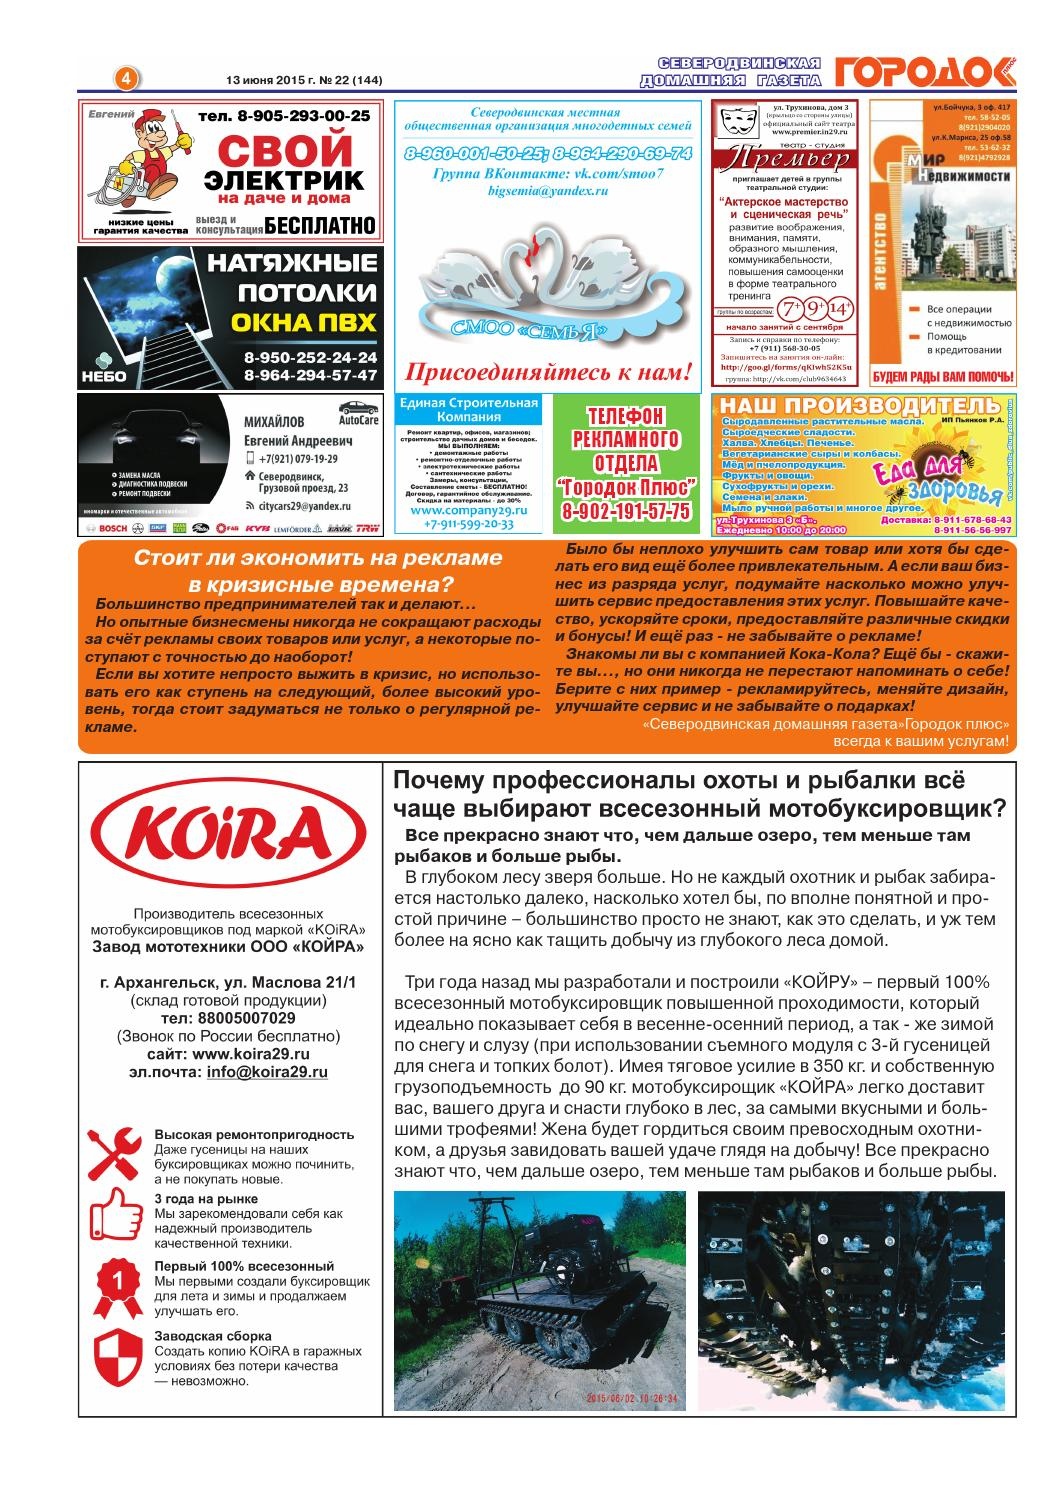 Городок плюс, выпуск номер 22 от 13 июня 2015 года, страница 4.